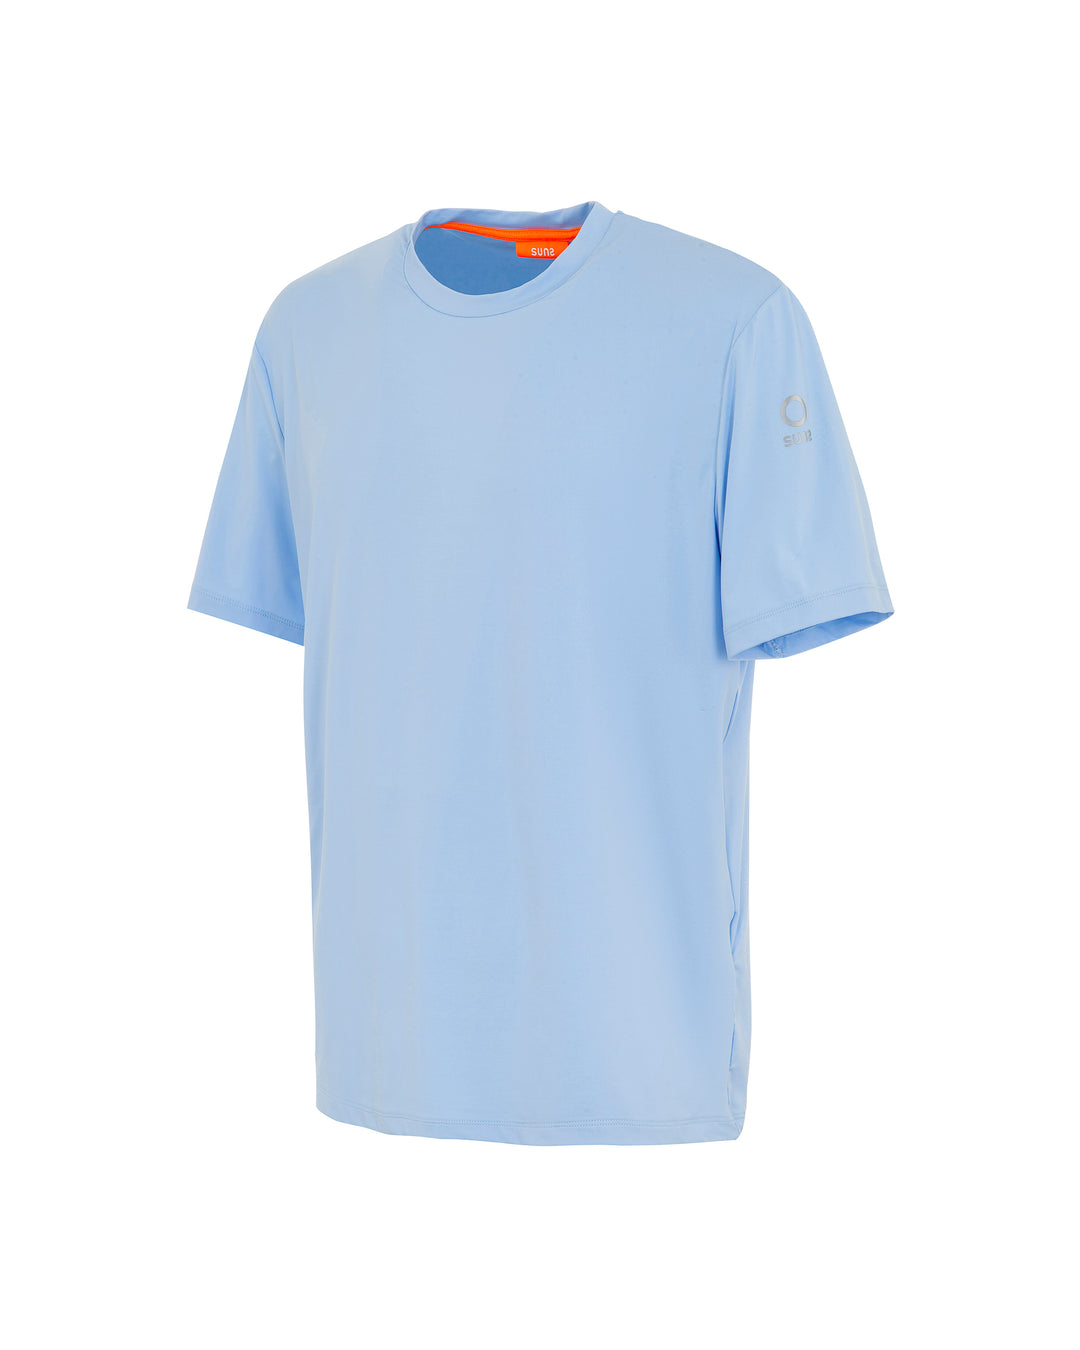 T-shirt Uomo SUNS Paul Lomellina in tessuto tecnico elasticizzato